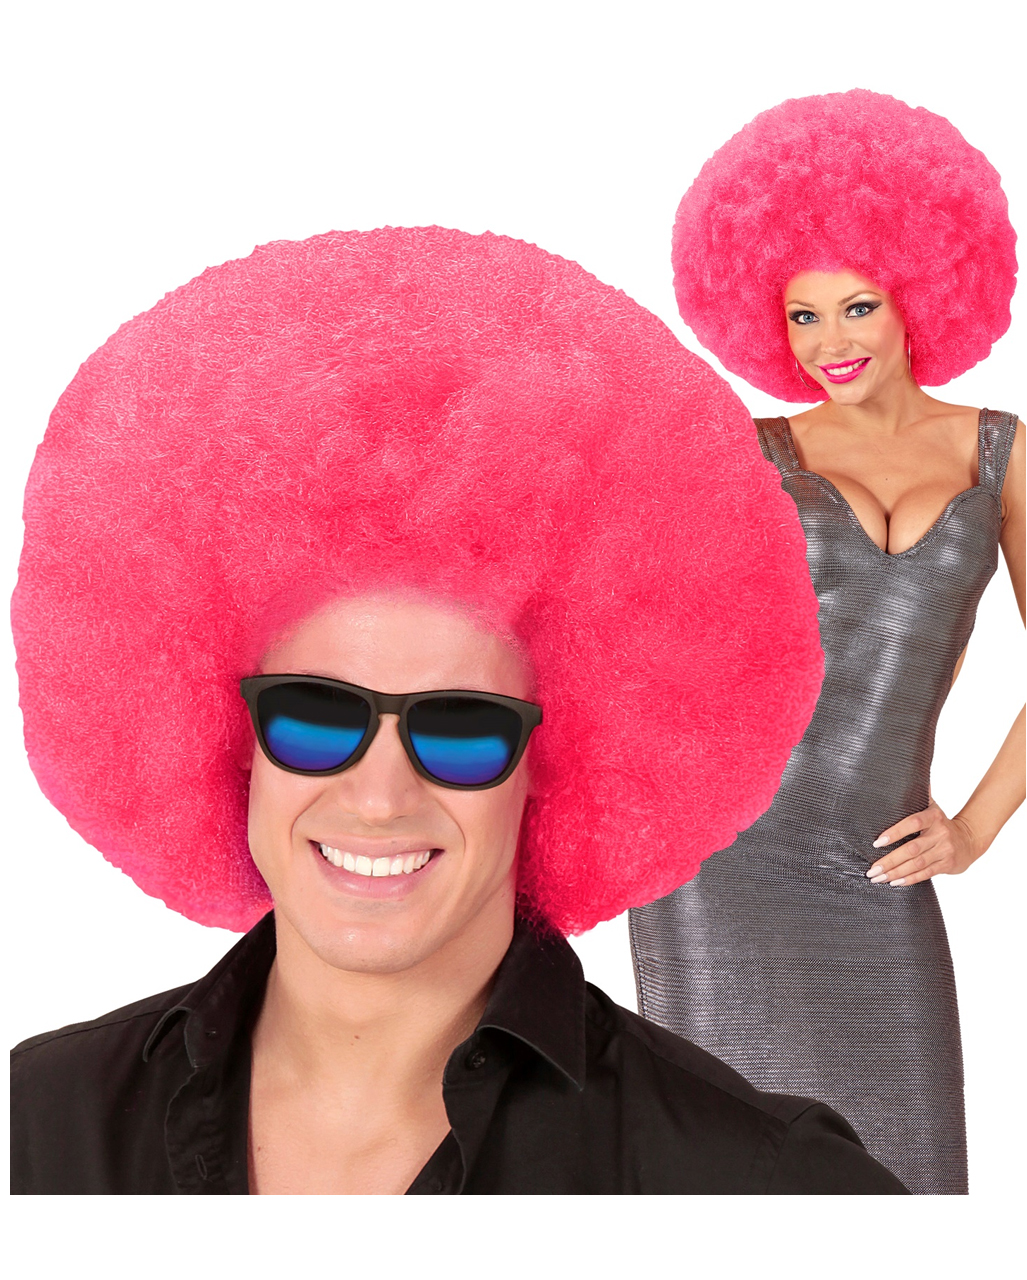 XL Afro Perücke Pink als Accessoire für Karneval